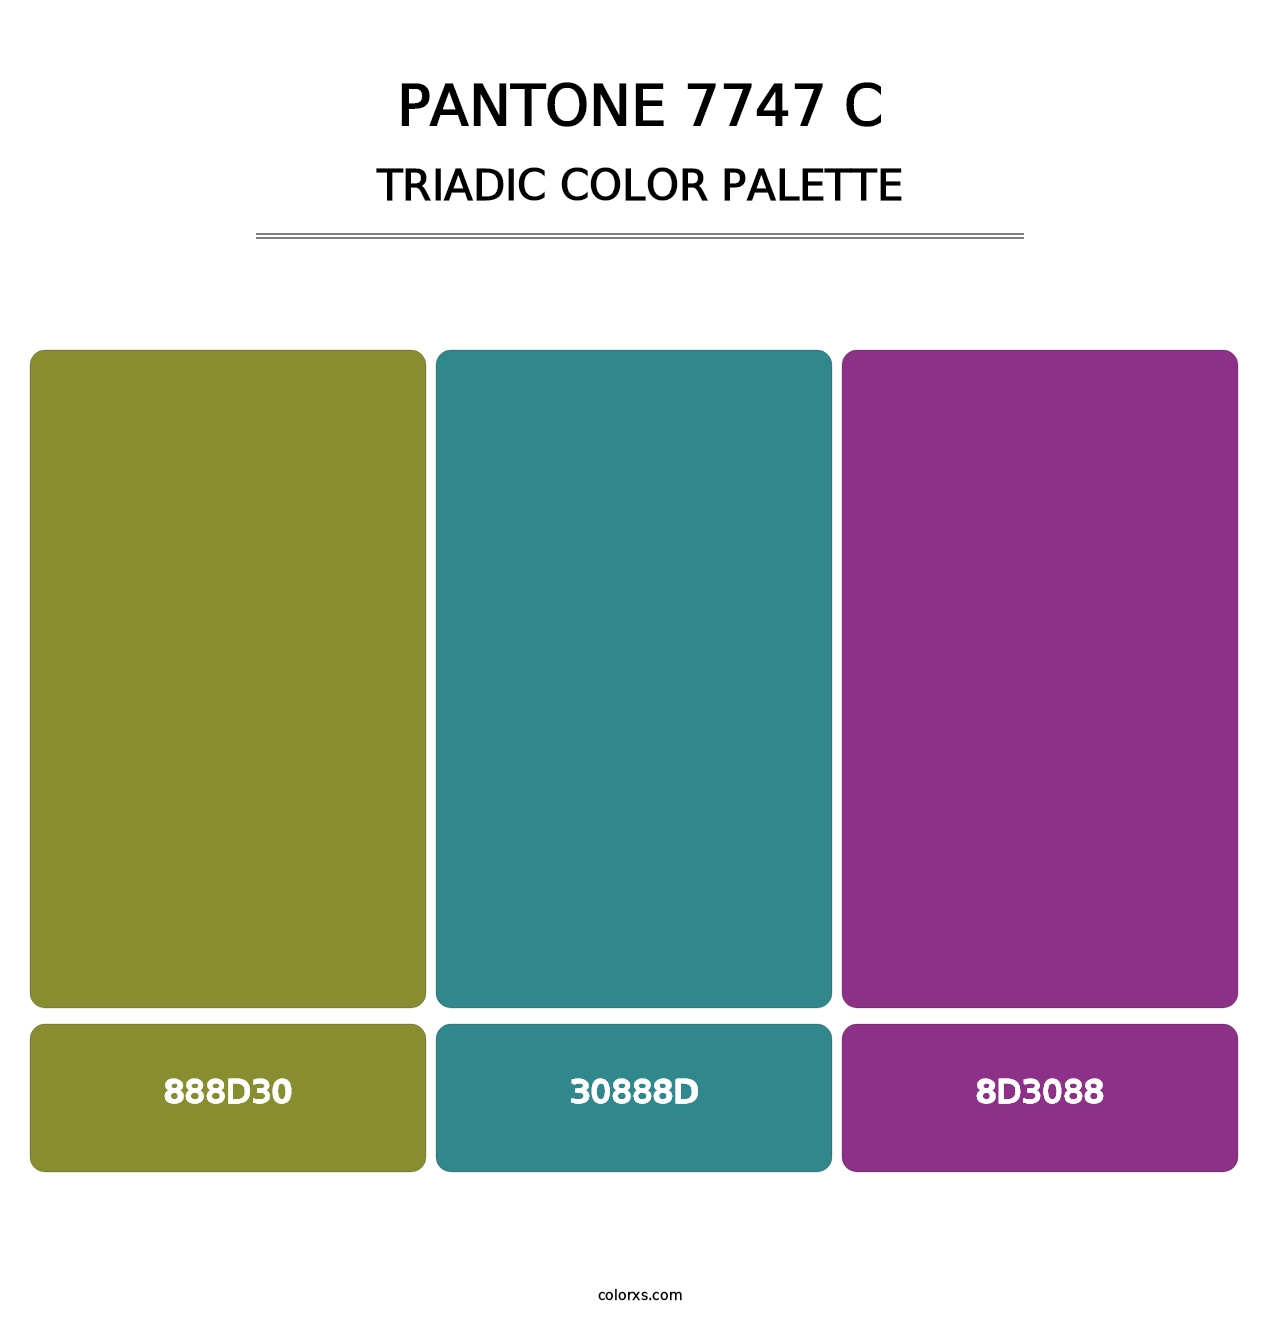 PANTONE 7747 C - Triadic Color Palette